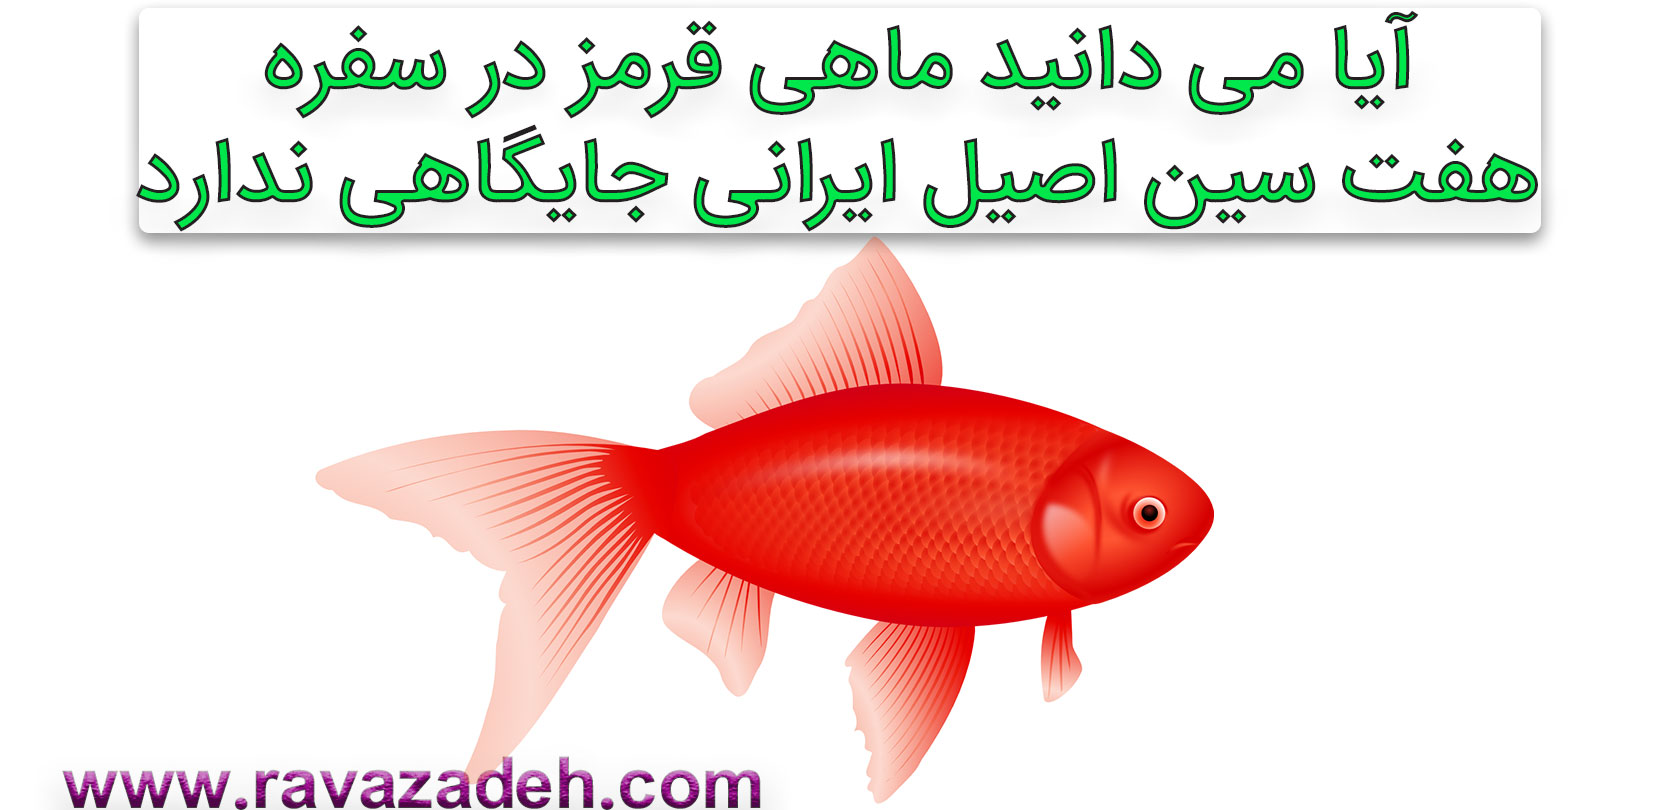 تصویر از آیا می دانید ماهی قرمز در سفره هفت سین اصیل ایرانی جایگاهی ندارد